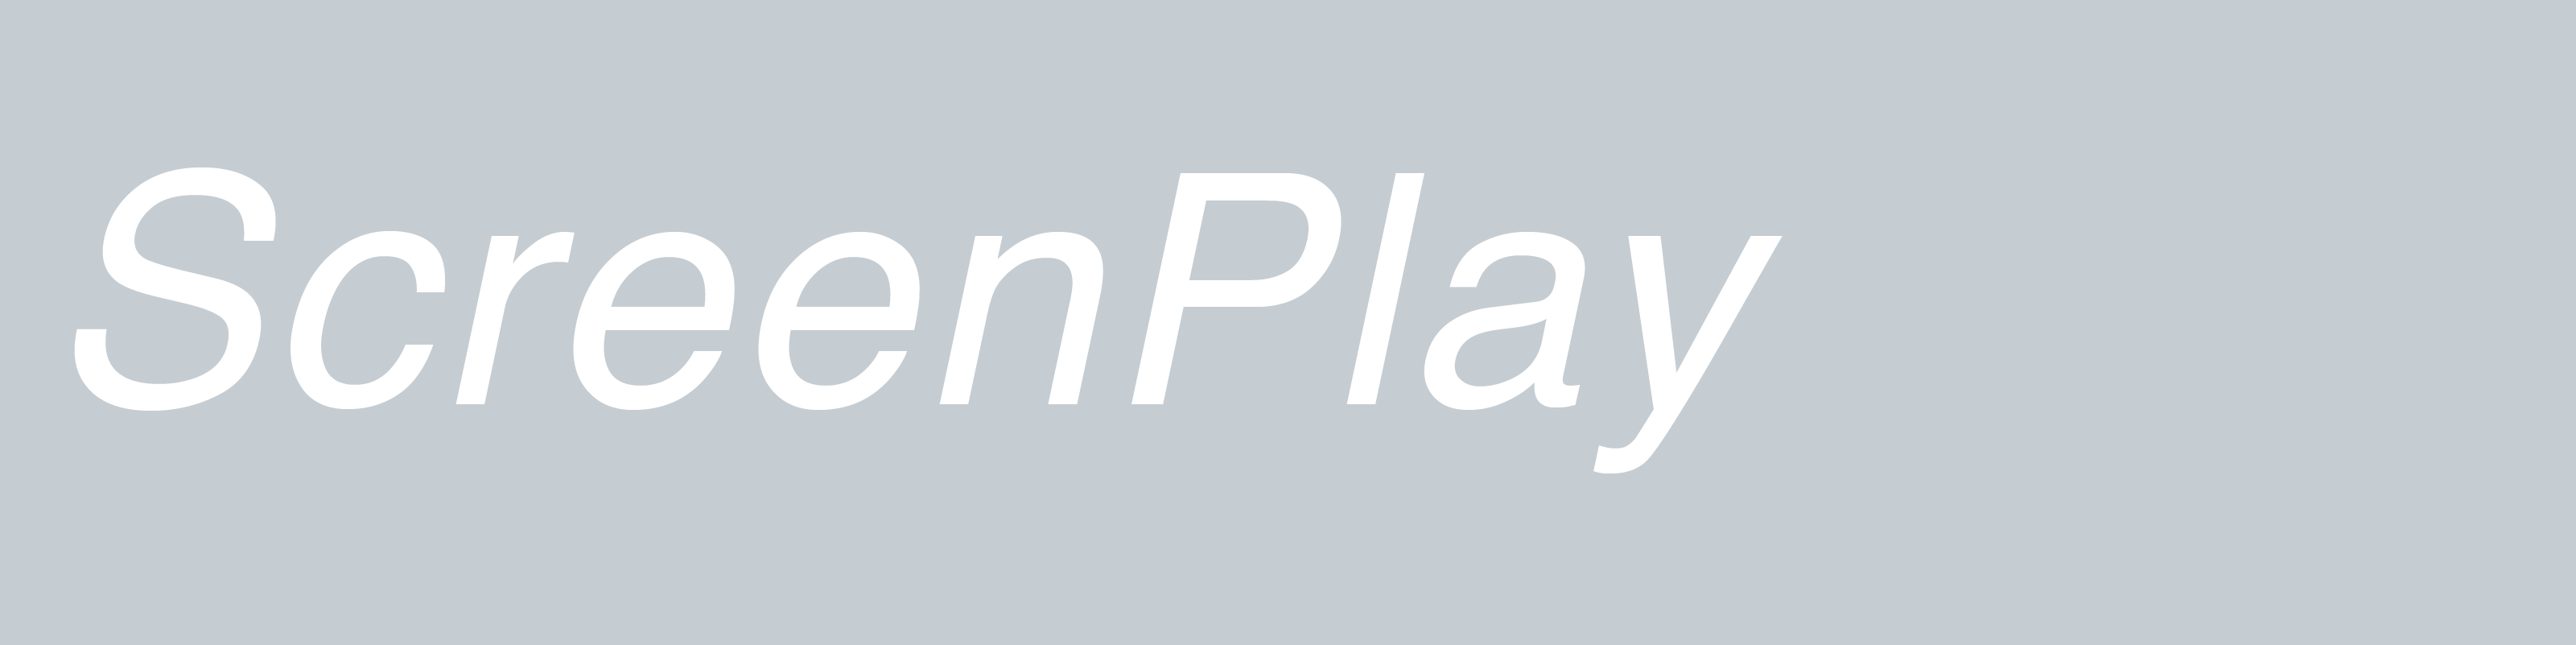 ScreenPlay Brand Logo